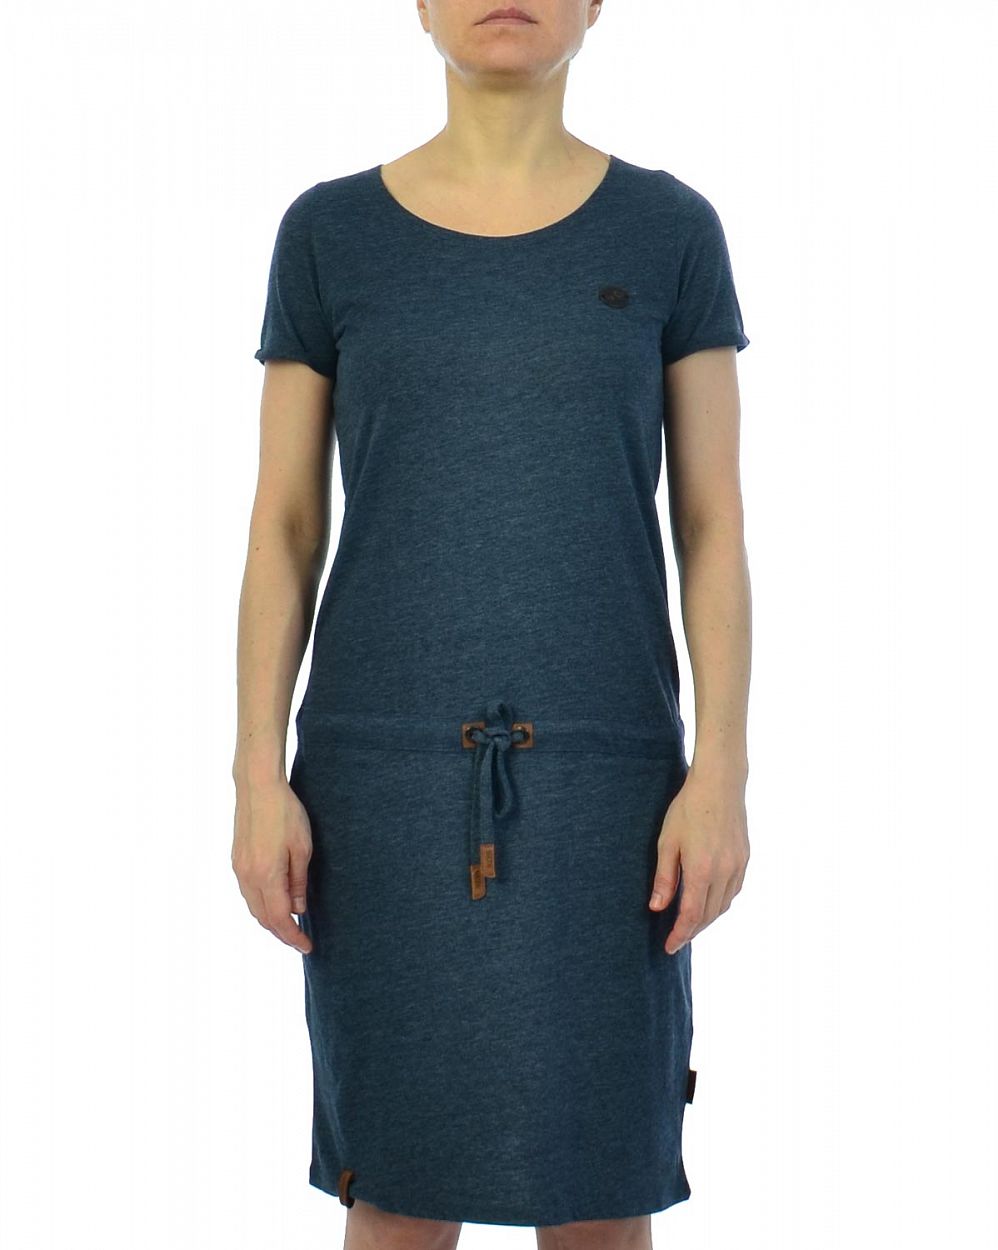 Платье женское короткий рукав и карманами Naketano El Majmuni IV Indigo Blue Melange отзывы